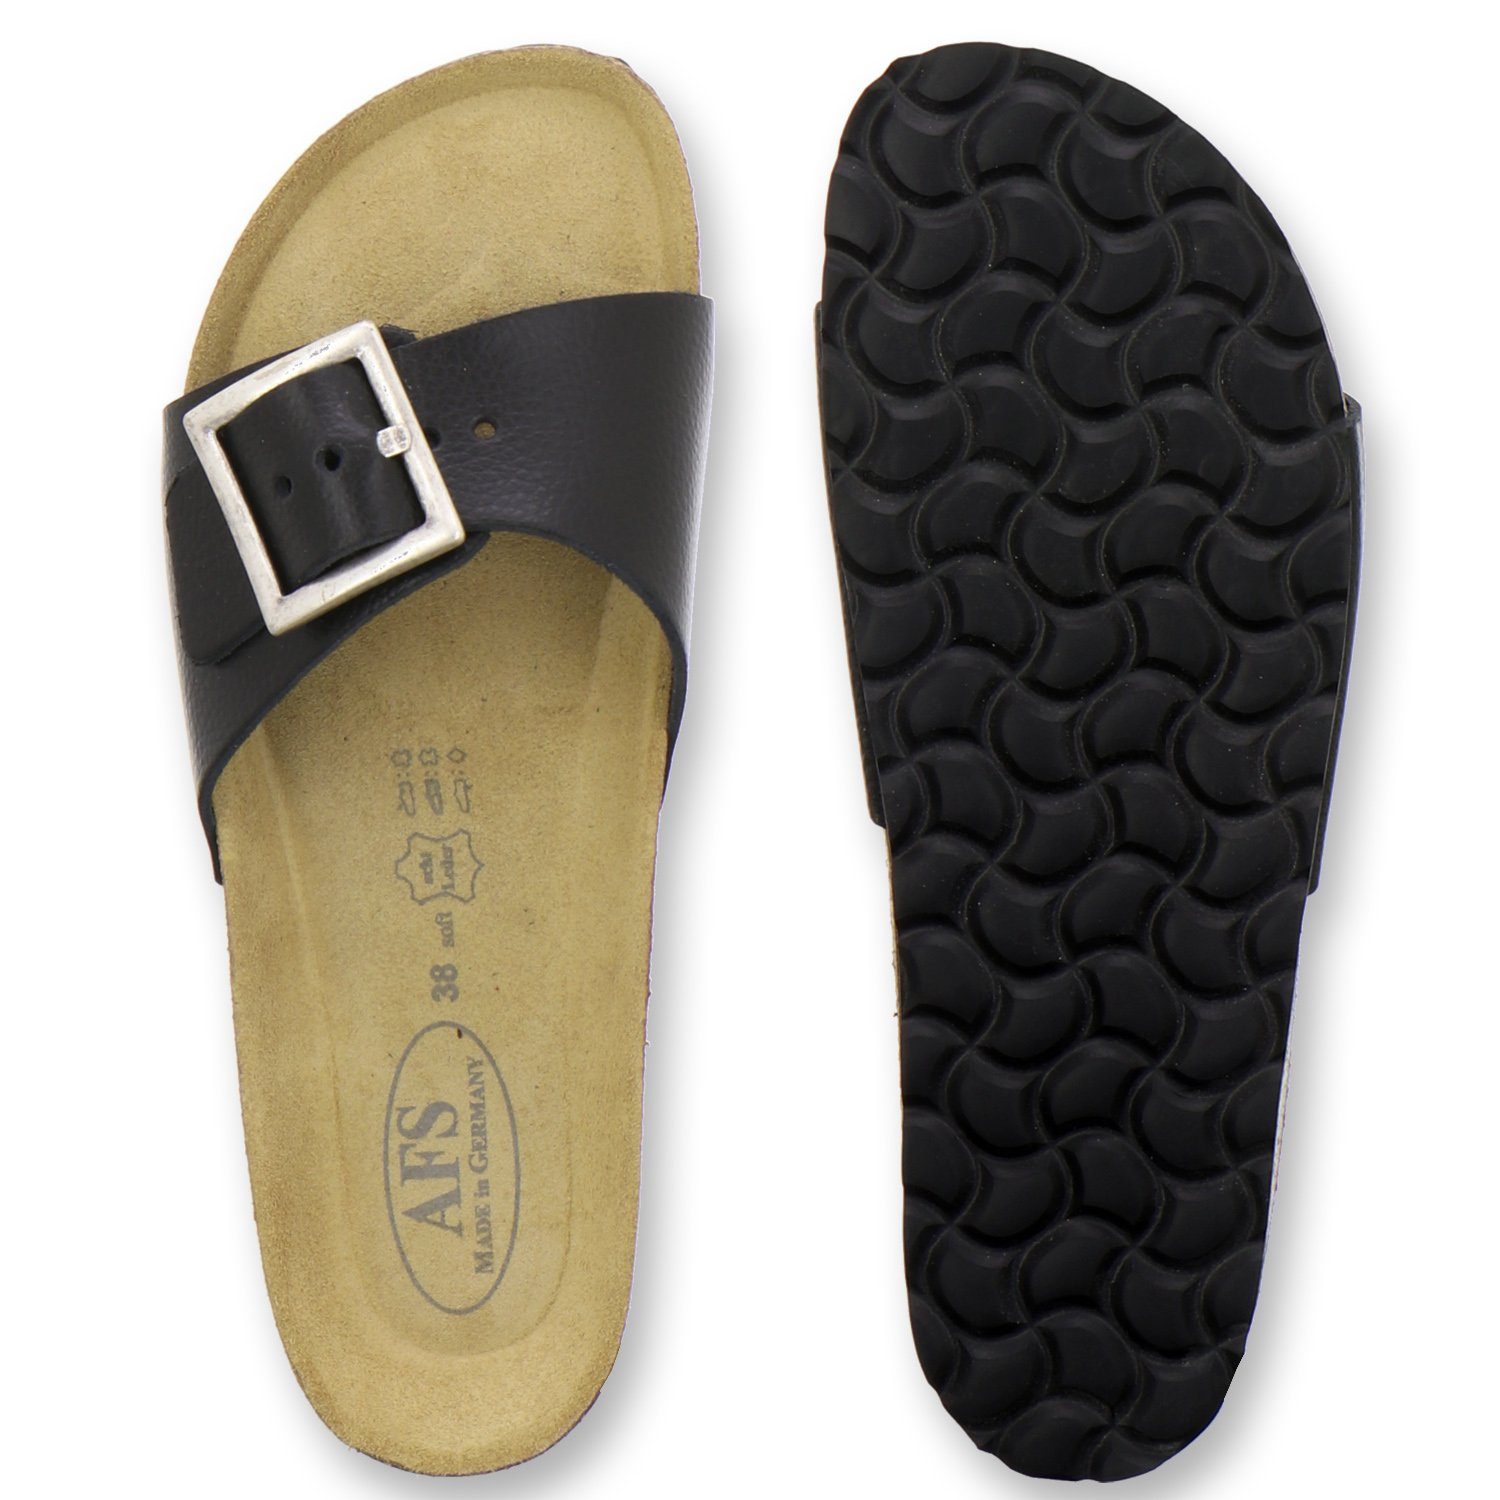 AFS-Schuhe 2112 Pantolette sommerliche Pantoletten Germany in Damen Glattleder Made schwarz für aus Leder